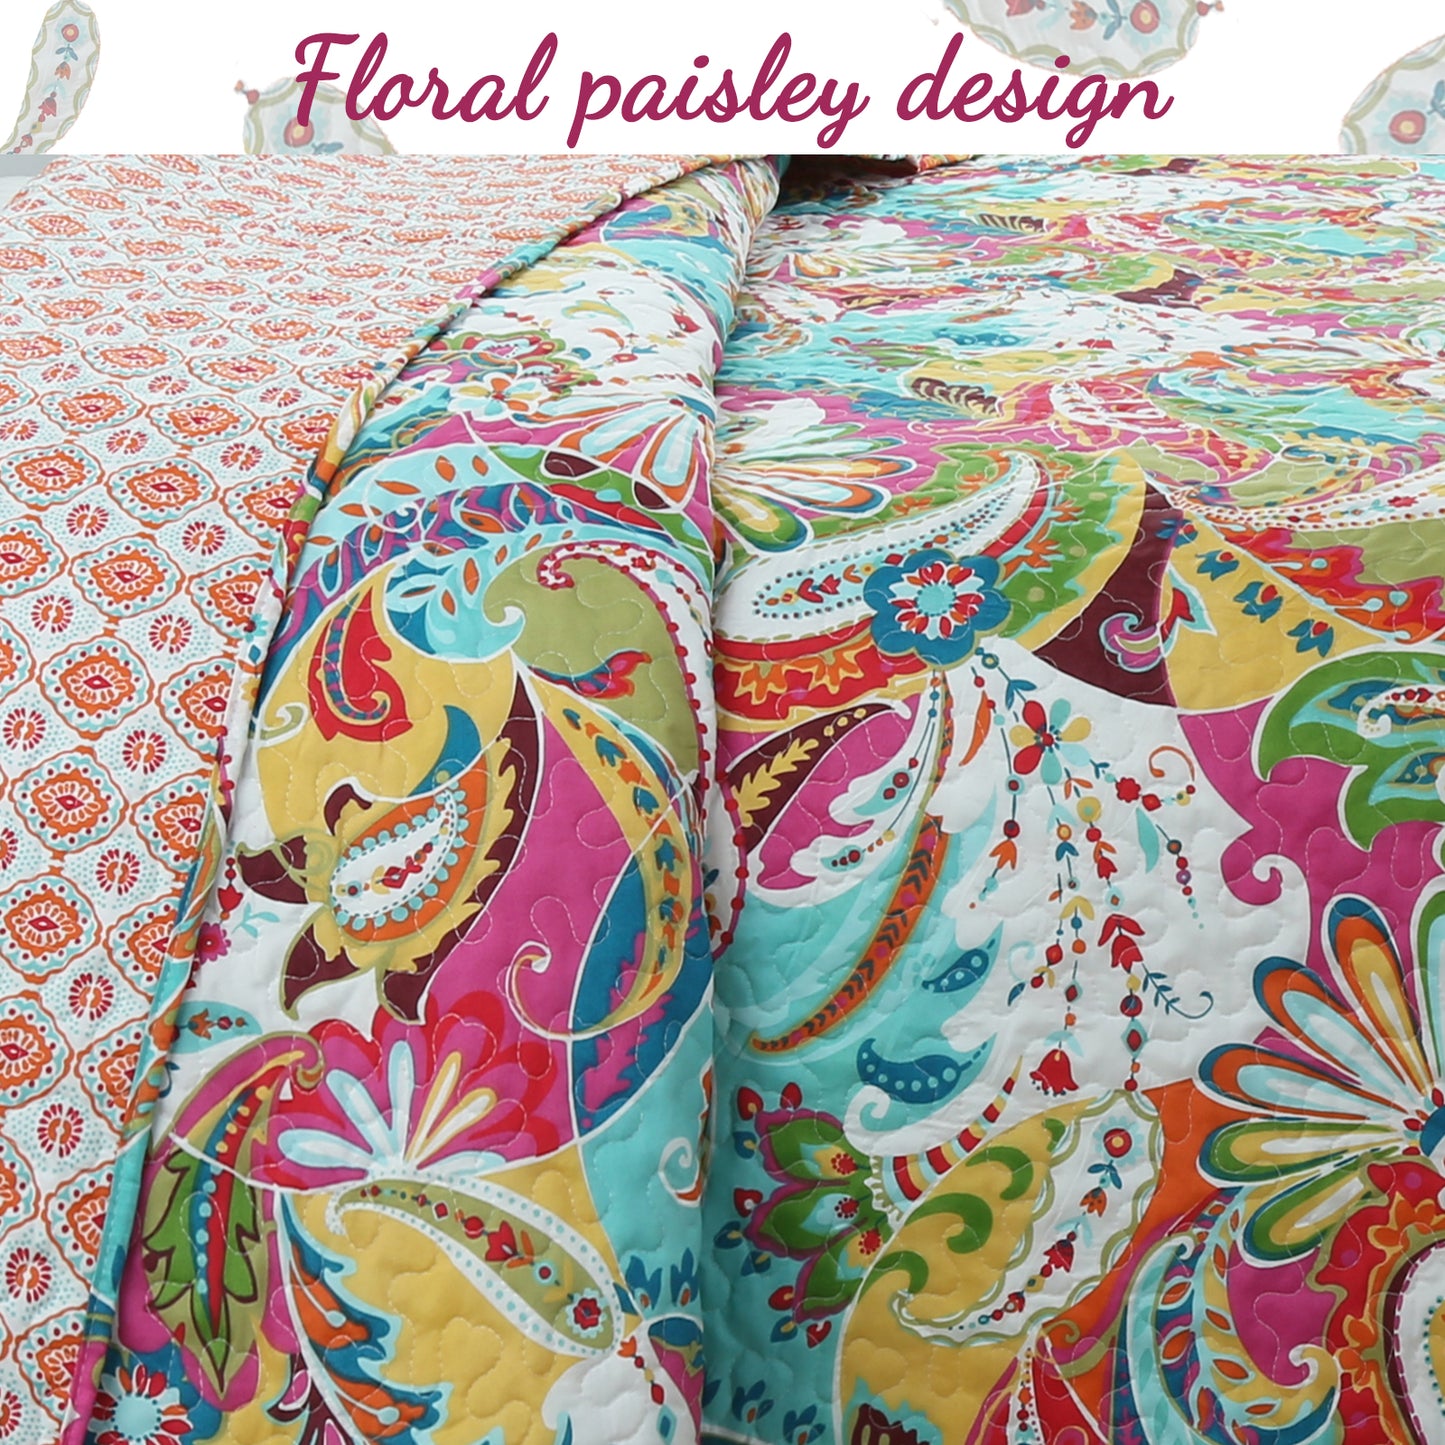 Flourish Multicolor 3-Piece Reversible Quilt Bedding Set